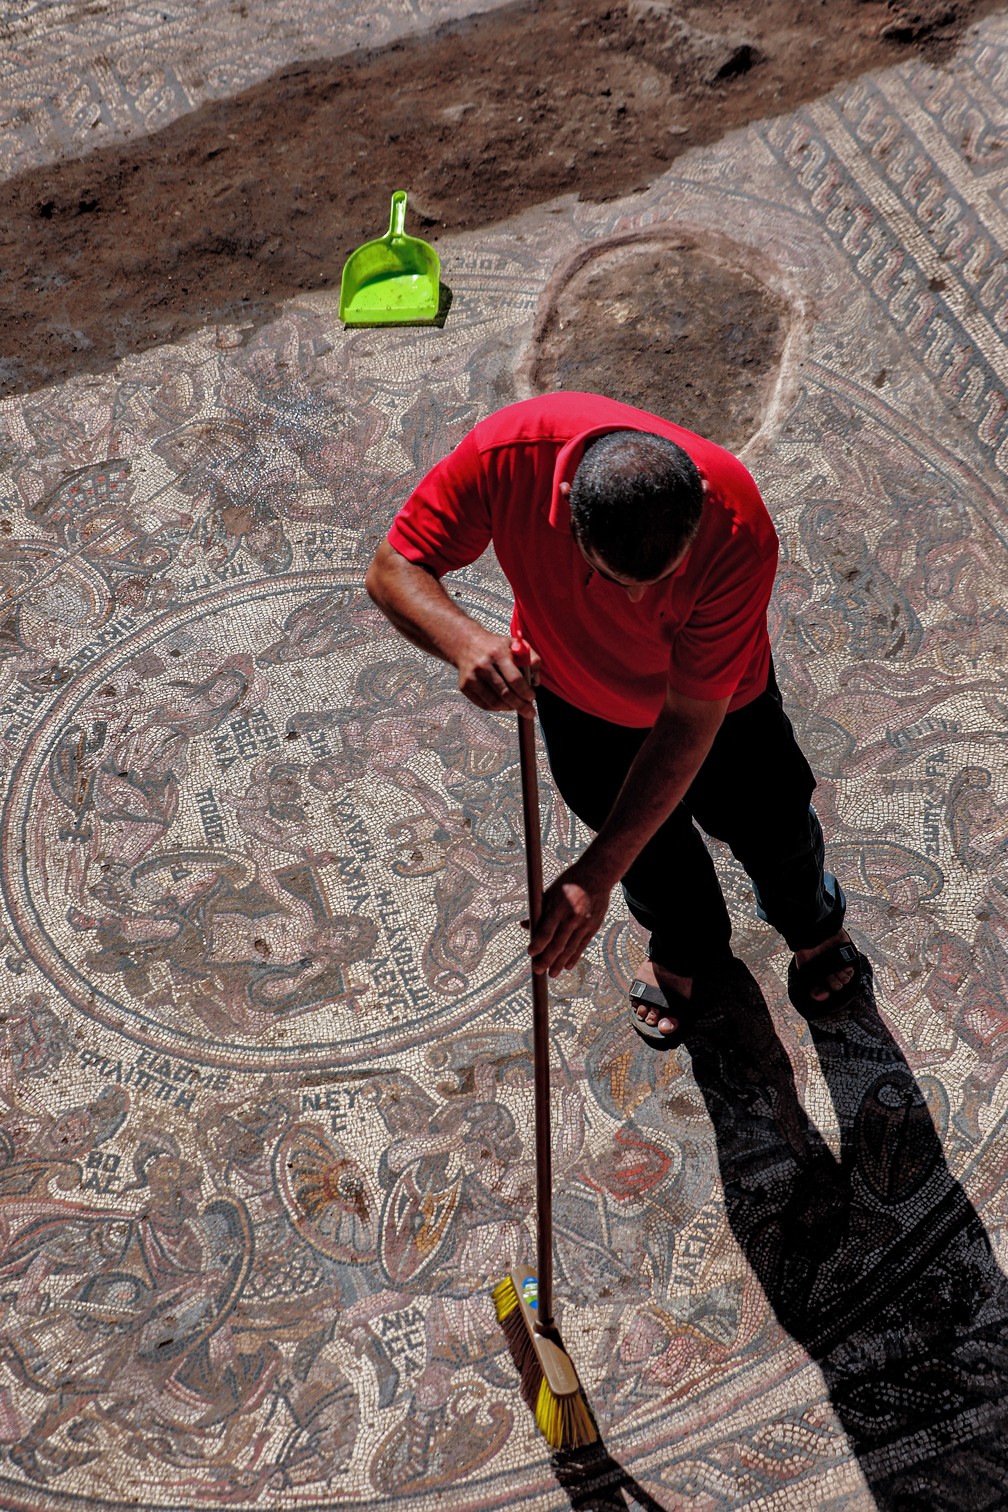 Enorme mosaico da era romana foi descoberto em Rastan, na Síria — Foto: Louai Beshara/AFP